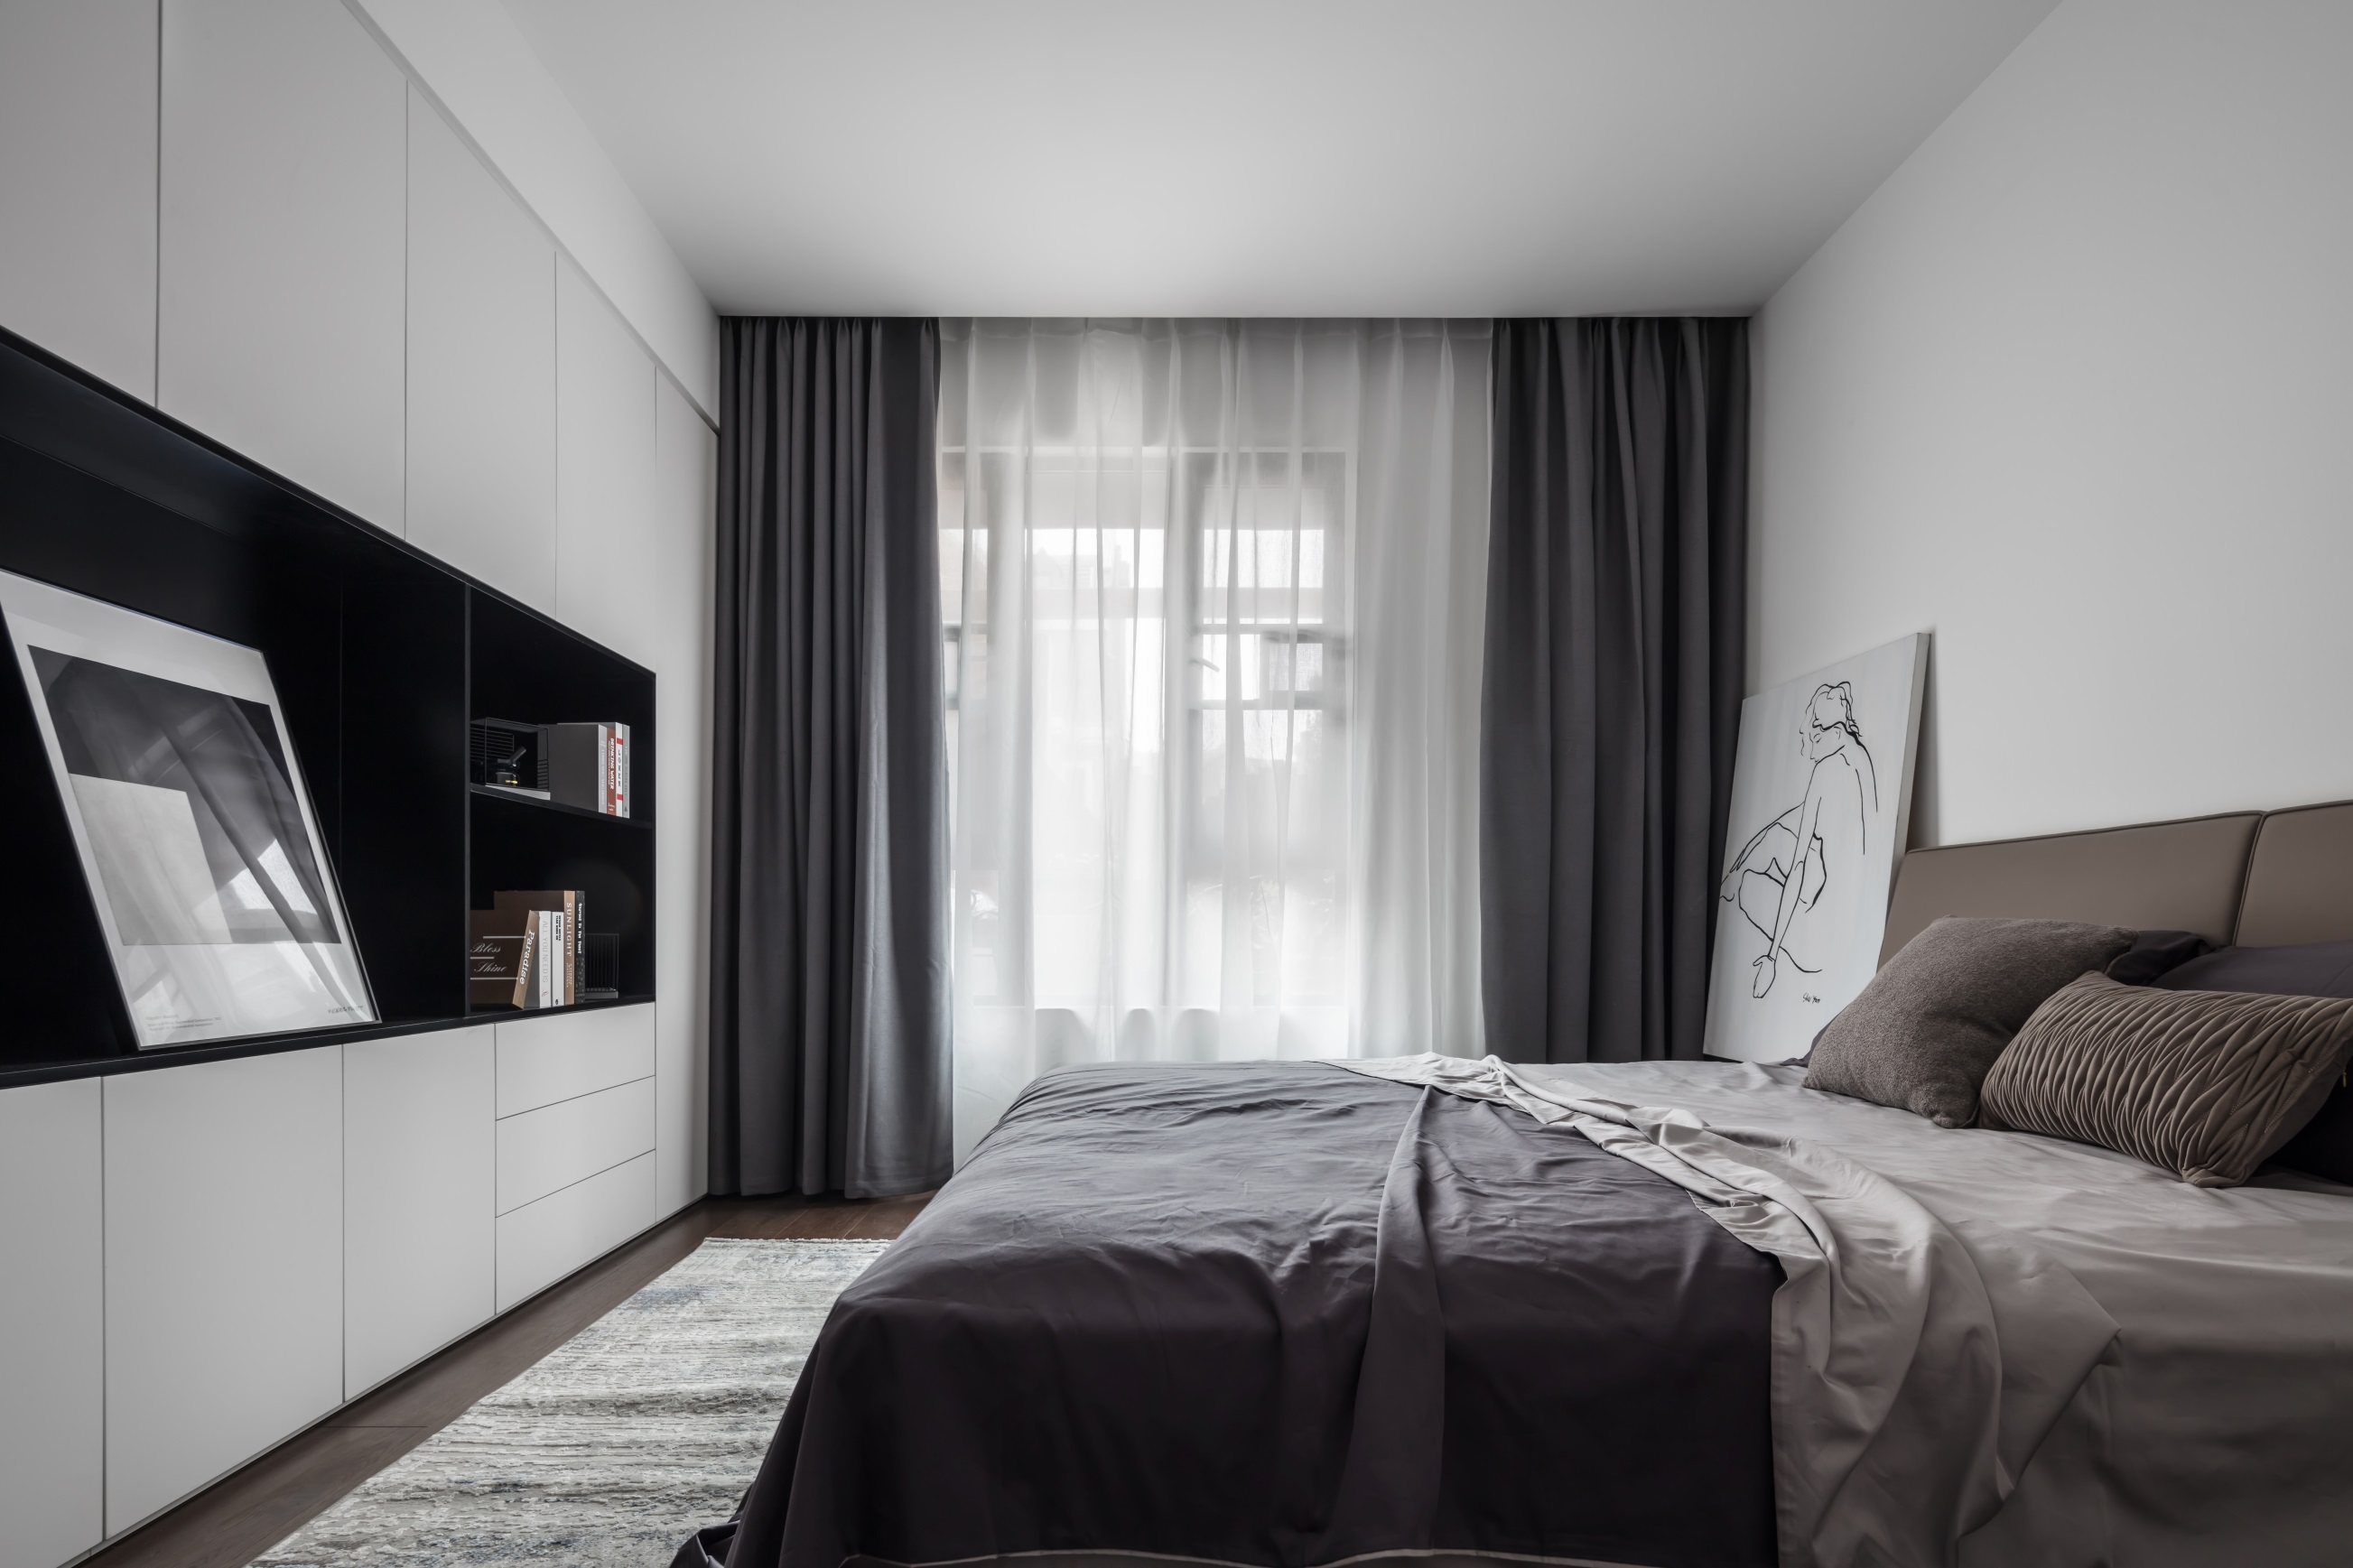 侧卧沿用简约基调，凸显空间主人的个性，色彩搭配比较简洁，家具主要以功能性为主。